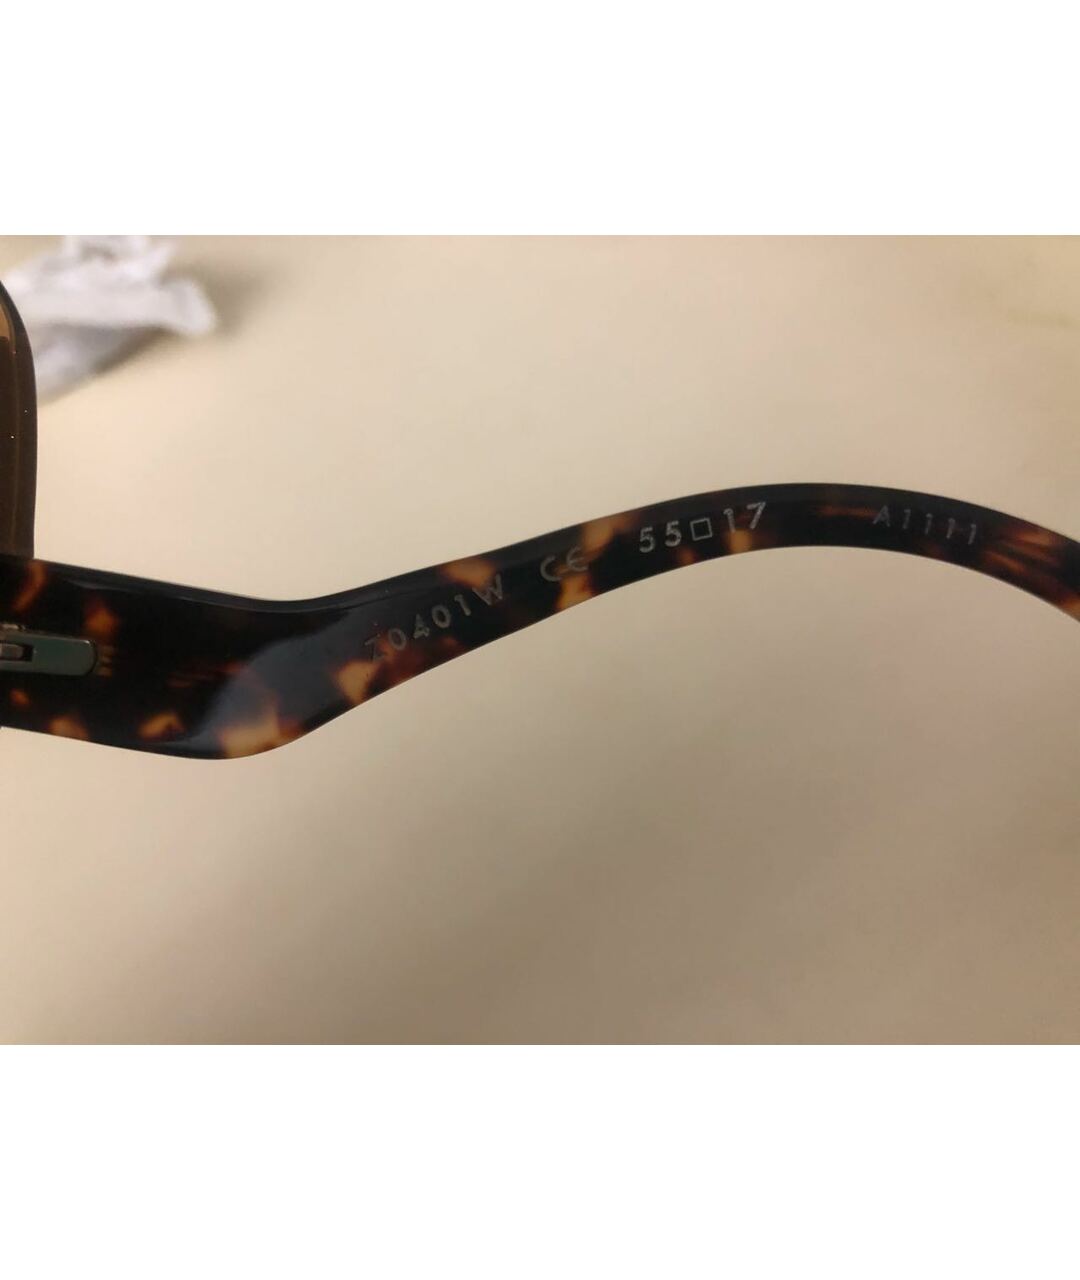 LOUIS VUITTON PRE-OWNED Коричневые пластиковые солнцезащитные очки, фото 2